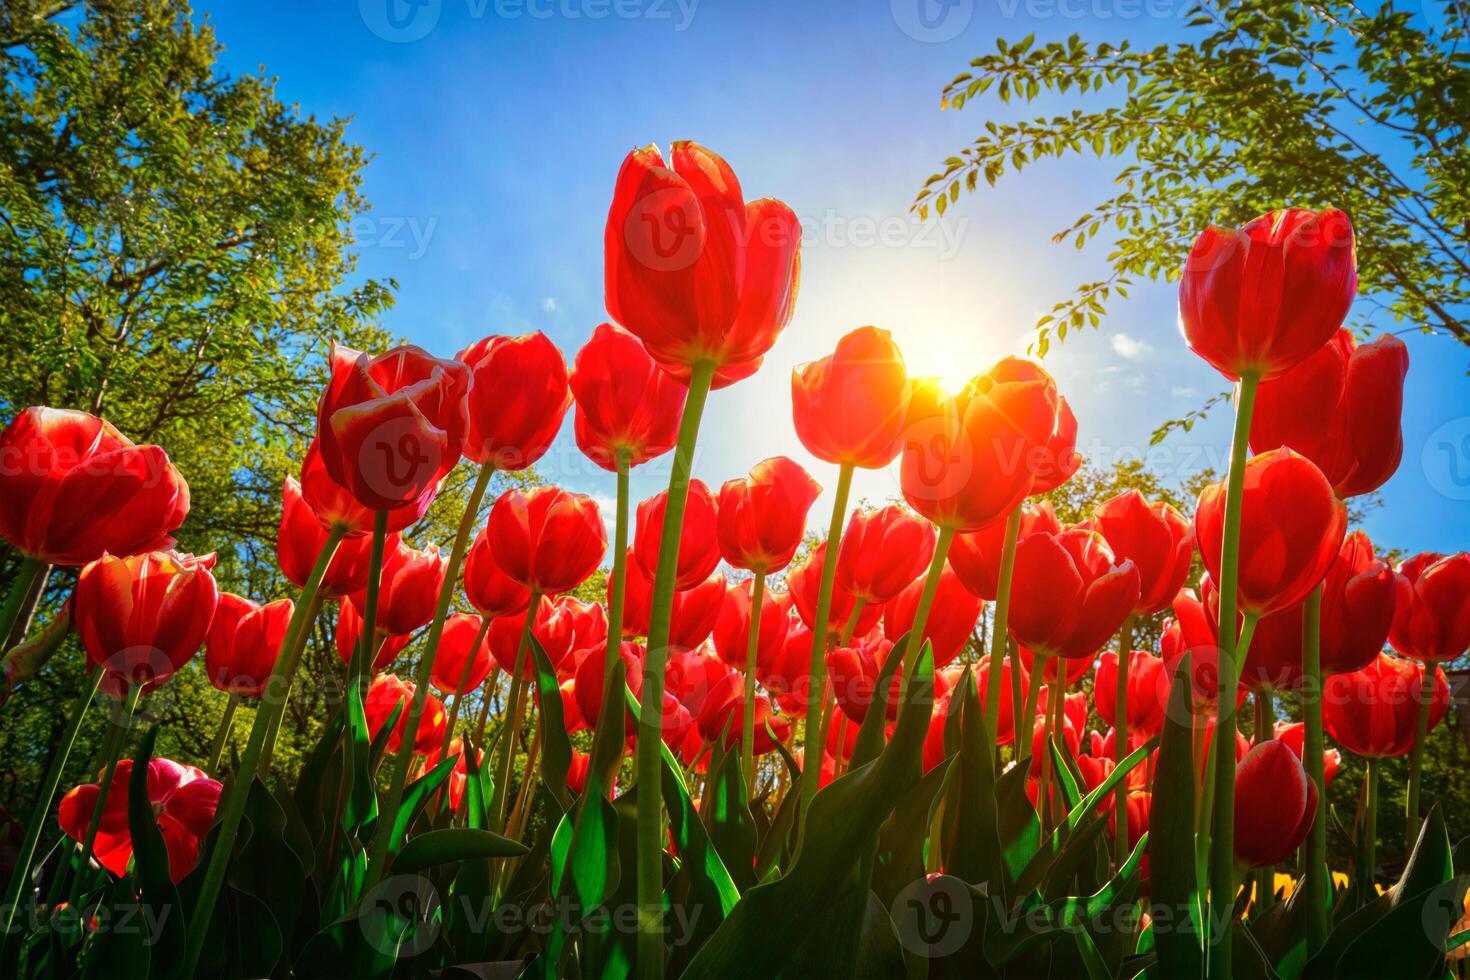 florescendo tulipas contra azul céu baixo vantagem ponto foto